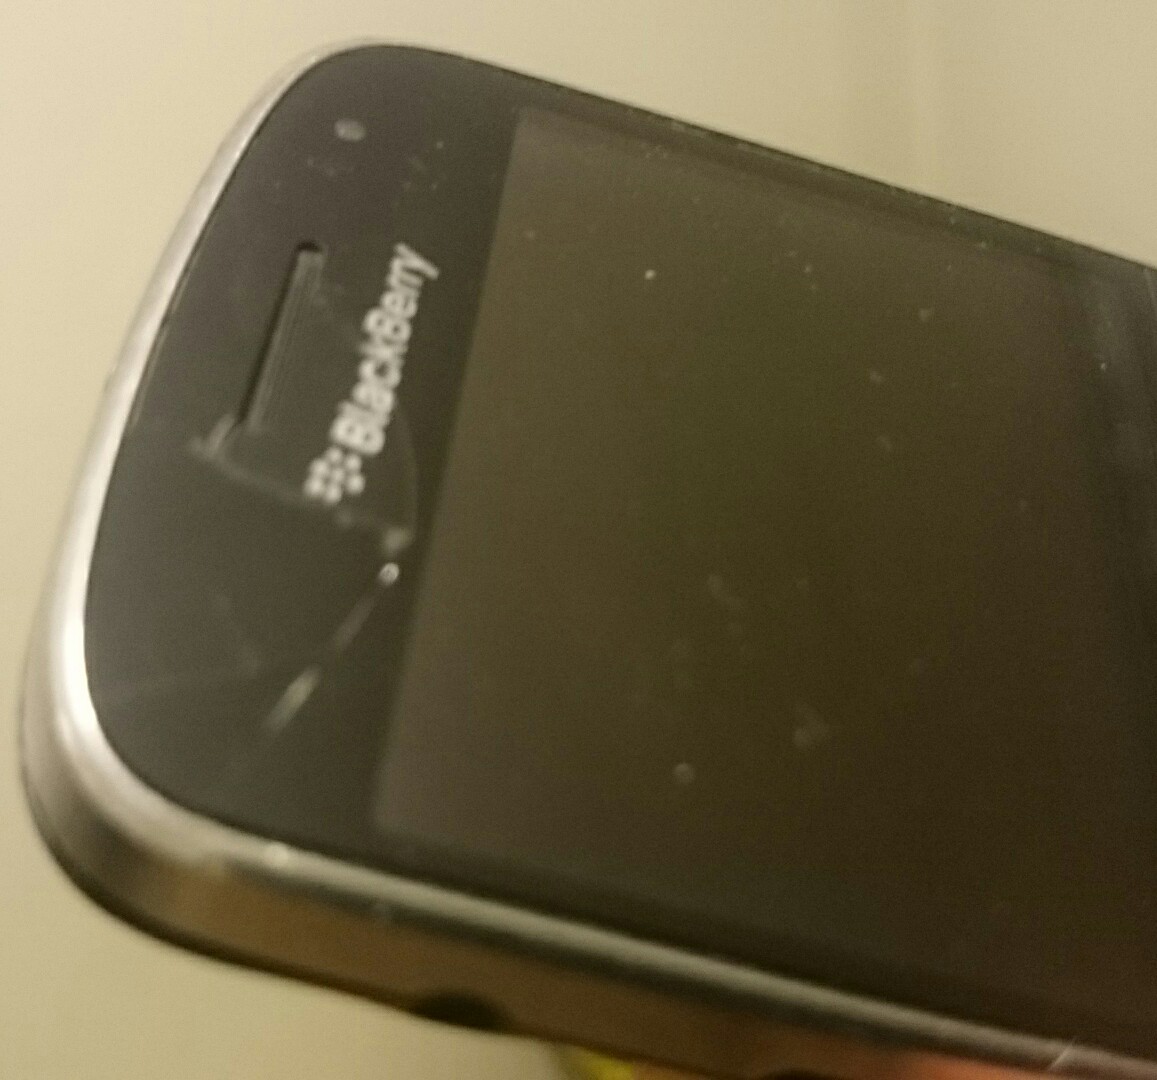  Satılmıştır - Hurda Blackberry 9900 Bold